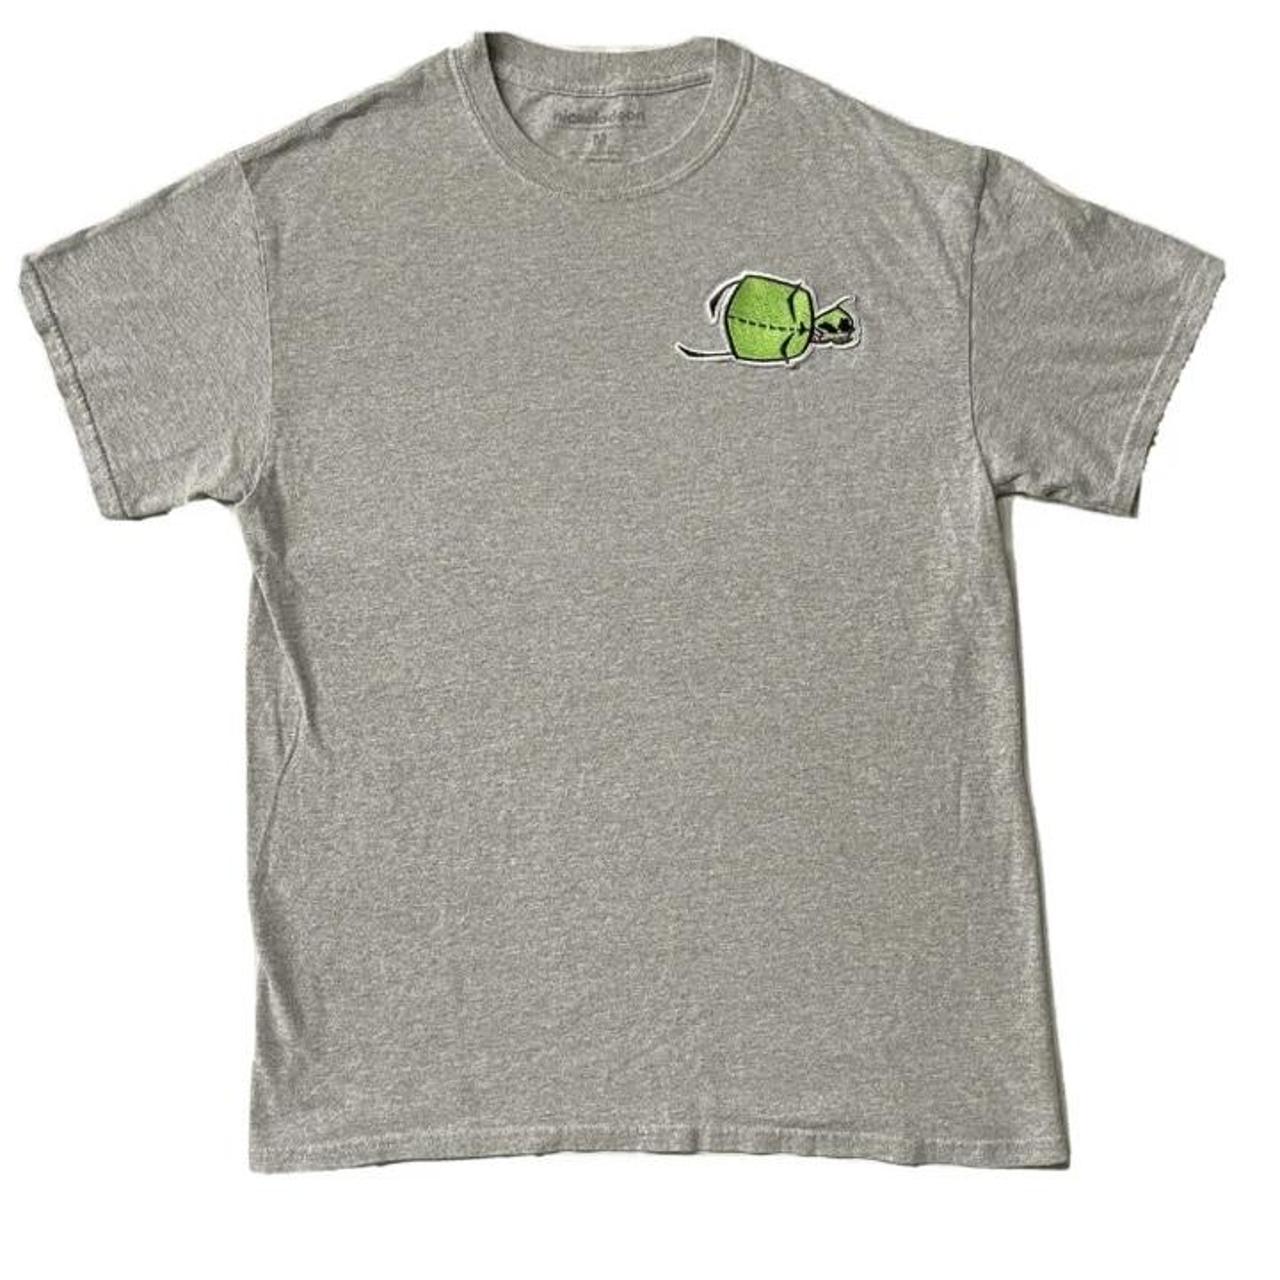 Product Image 1 - Nickelodeon Invader Zim GIR T-Shirt